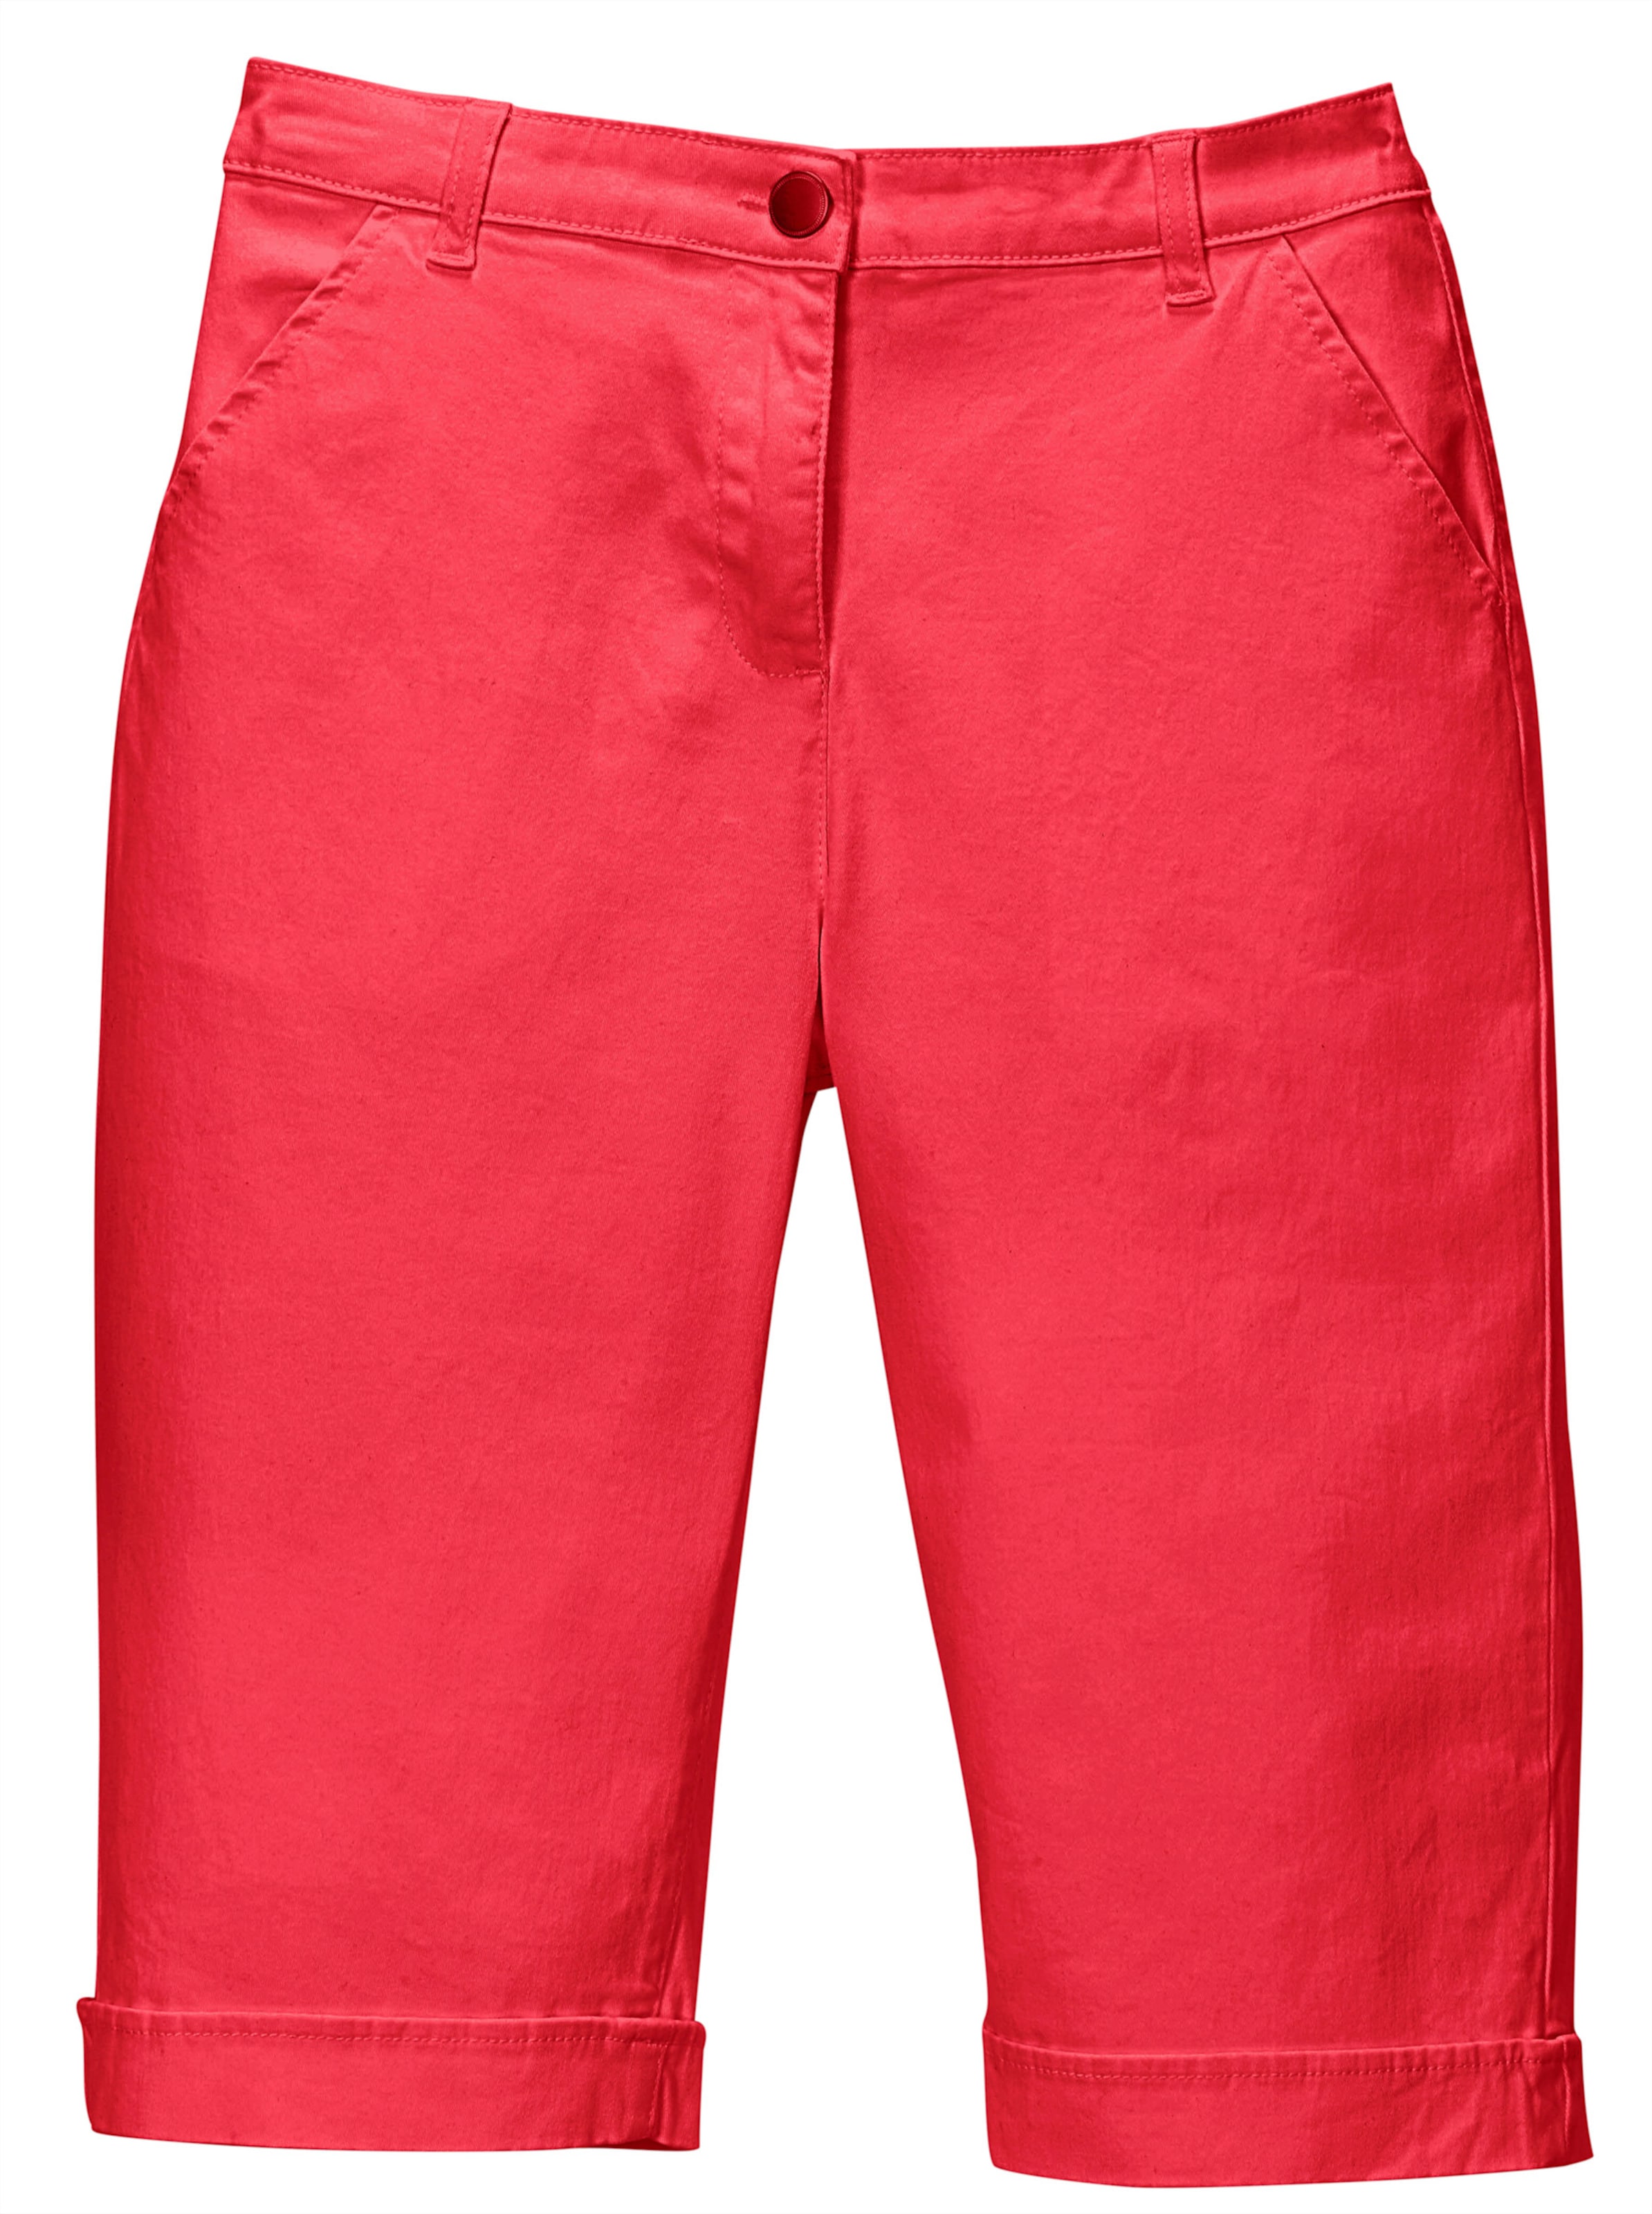 Taschen günstig Kaufen-Jeansbermudas in rot von heine. Jeansbermudas in rot von heine <![CDATA[Lässige Jeans-Bermudas in aktuellen Sommerfarben. Mit rückwärtigem Dehnbund, Gürtelschlaufen sowie Knopf und Reißverschluss. 2 Taschen vorne, 2 imitierte Gesäßtaschen. Am Saum 